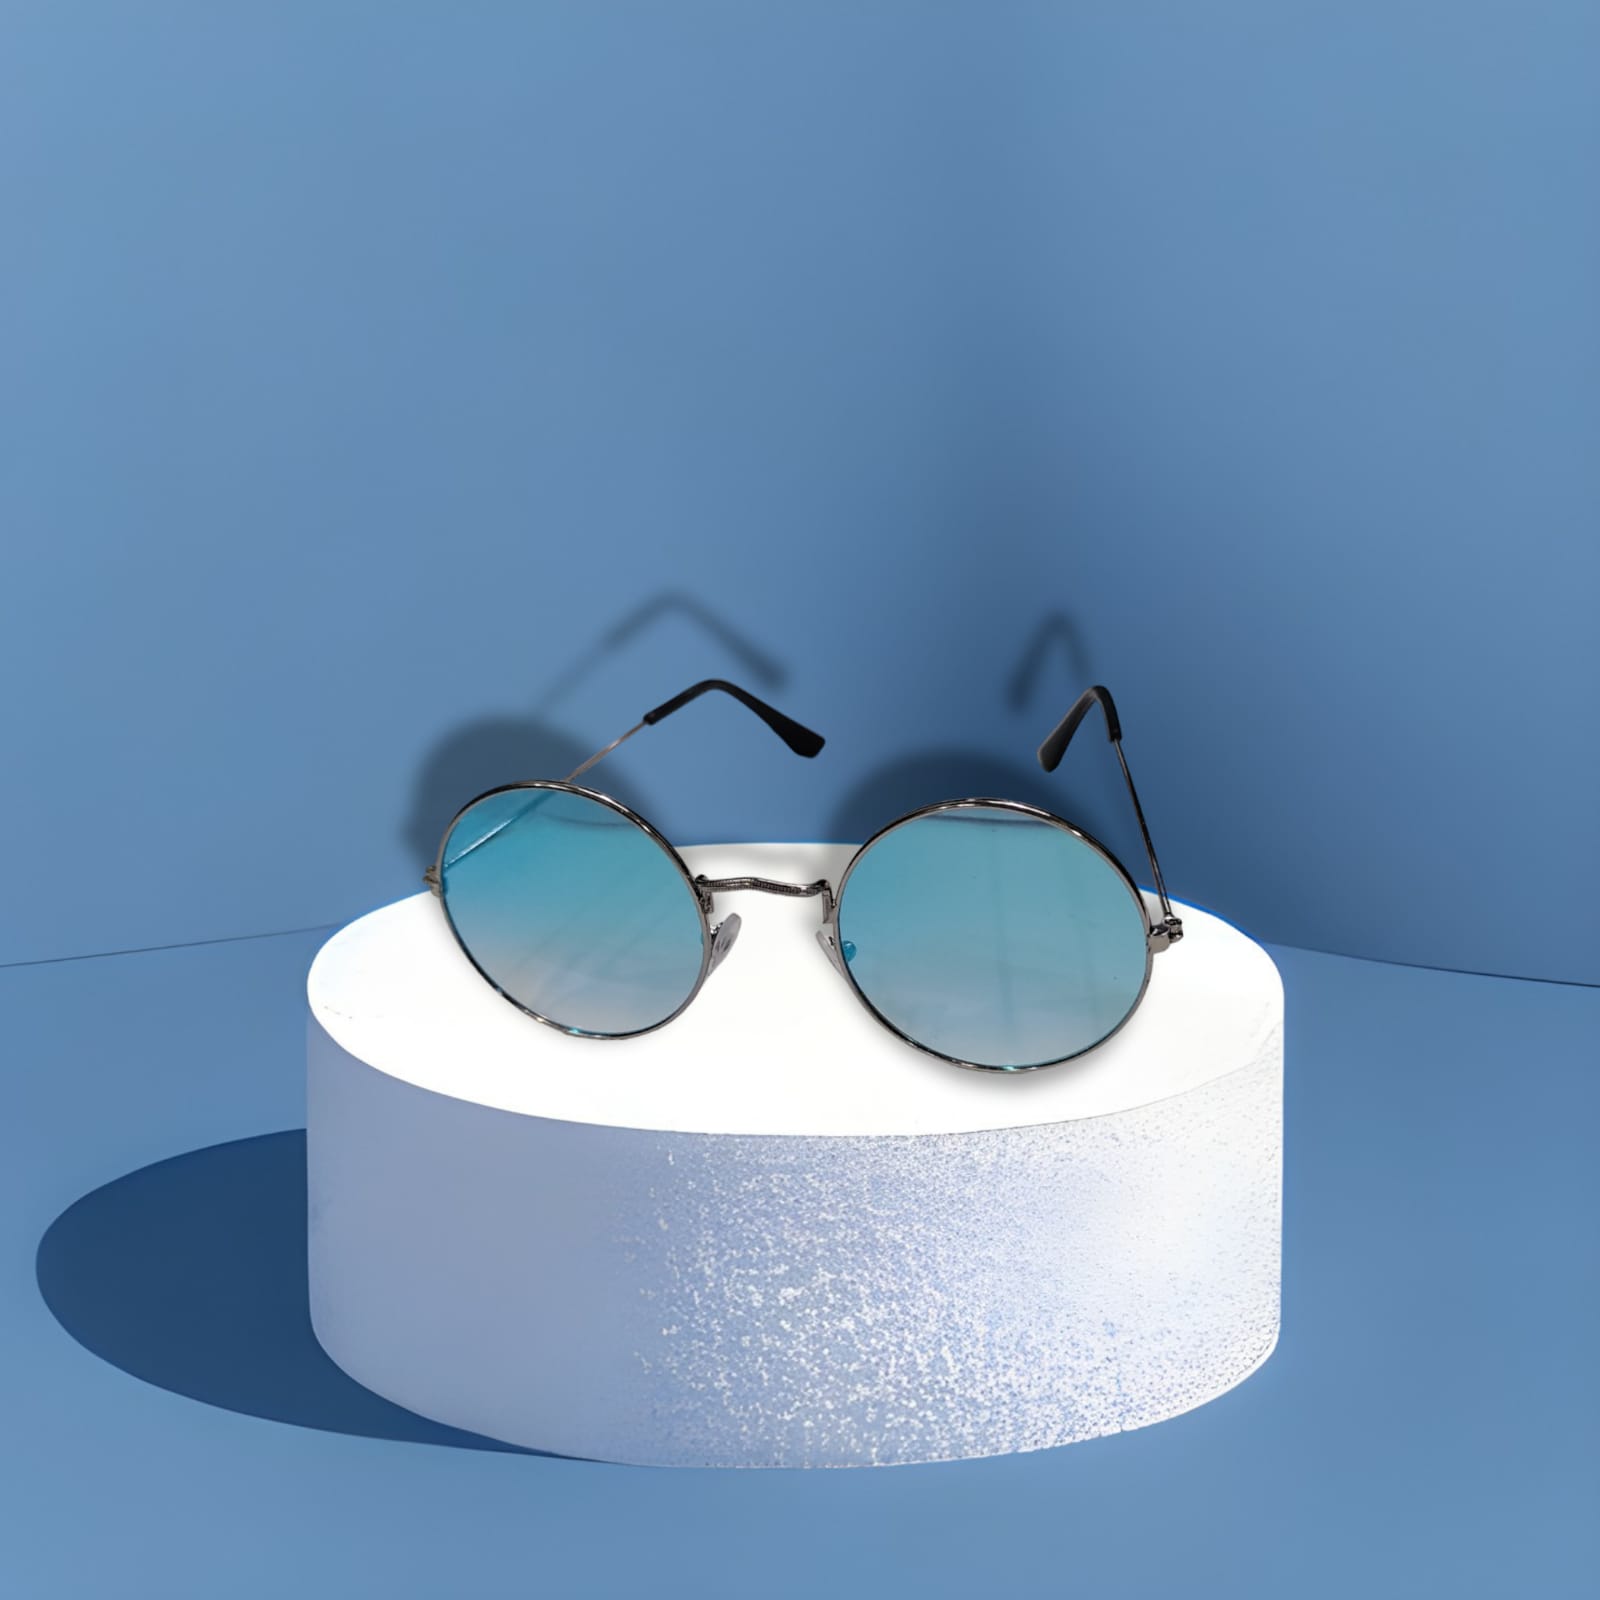 Unisex Adult Round Sunglasses